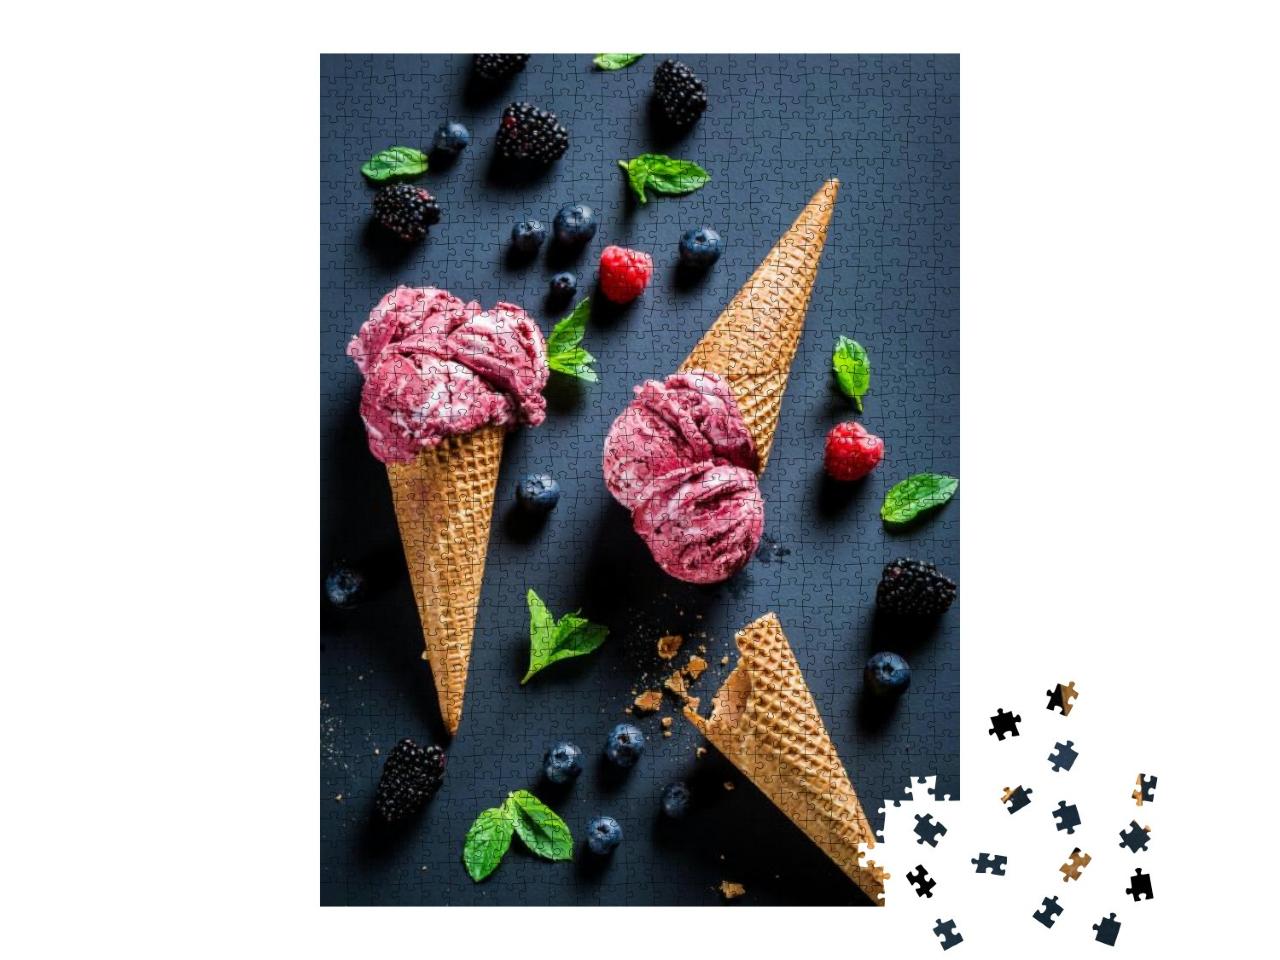 Puzzle 1000 Teile „Süßes Eis mit Beerenfrüchten und Minzblättern“